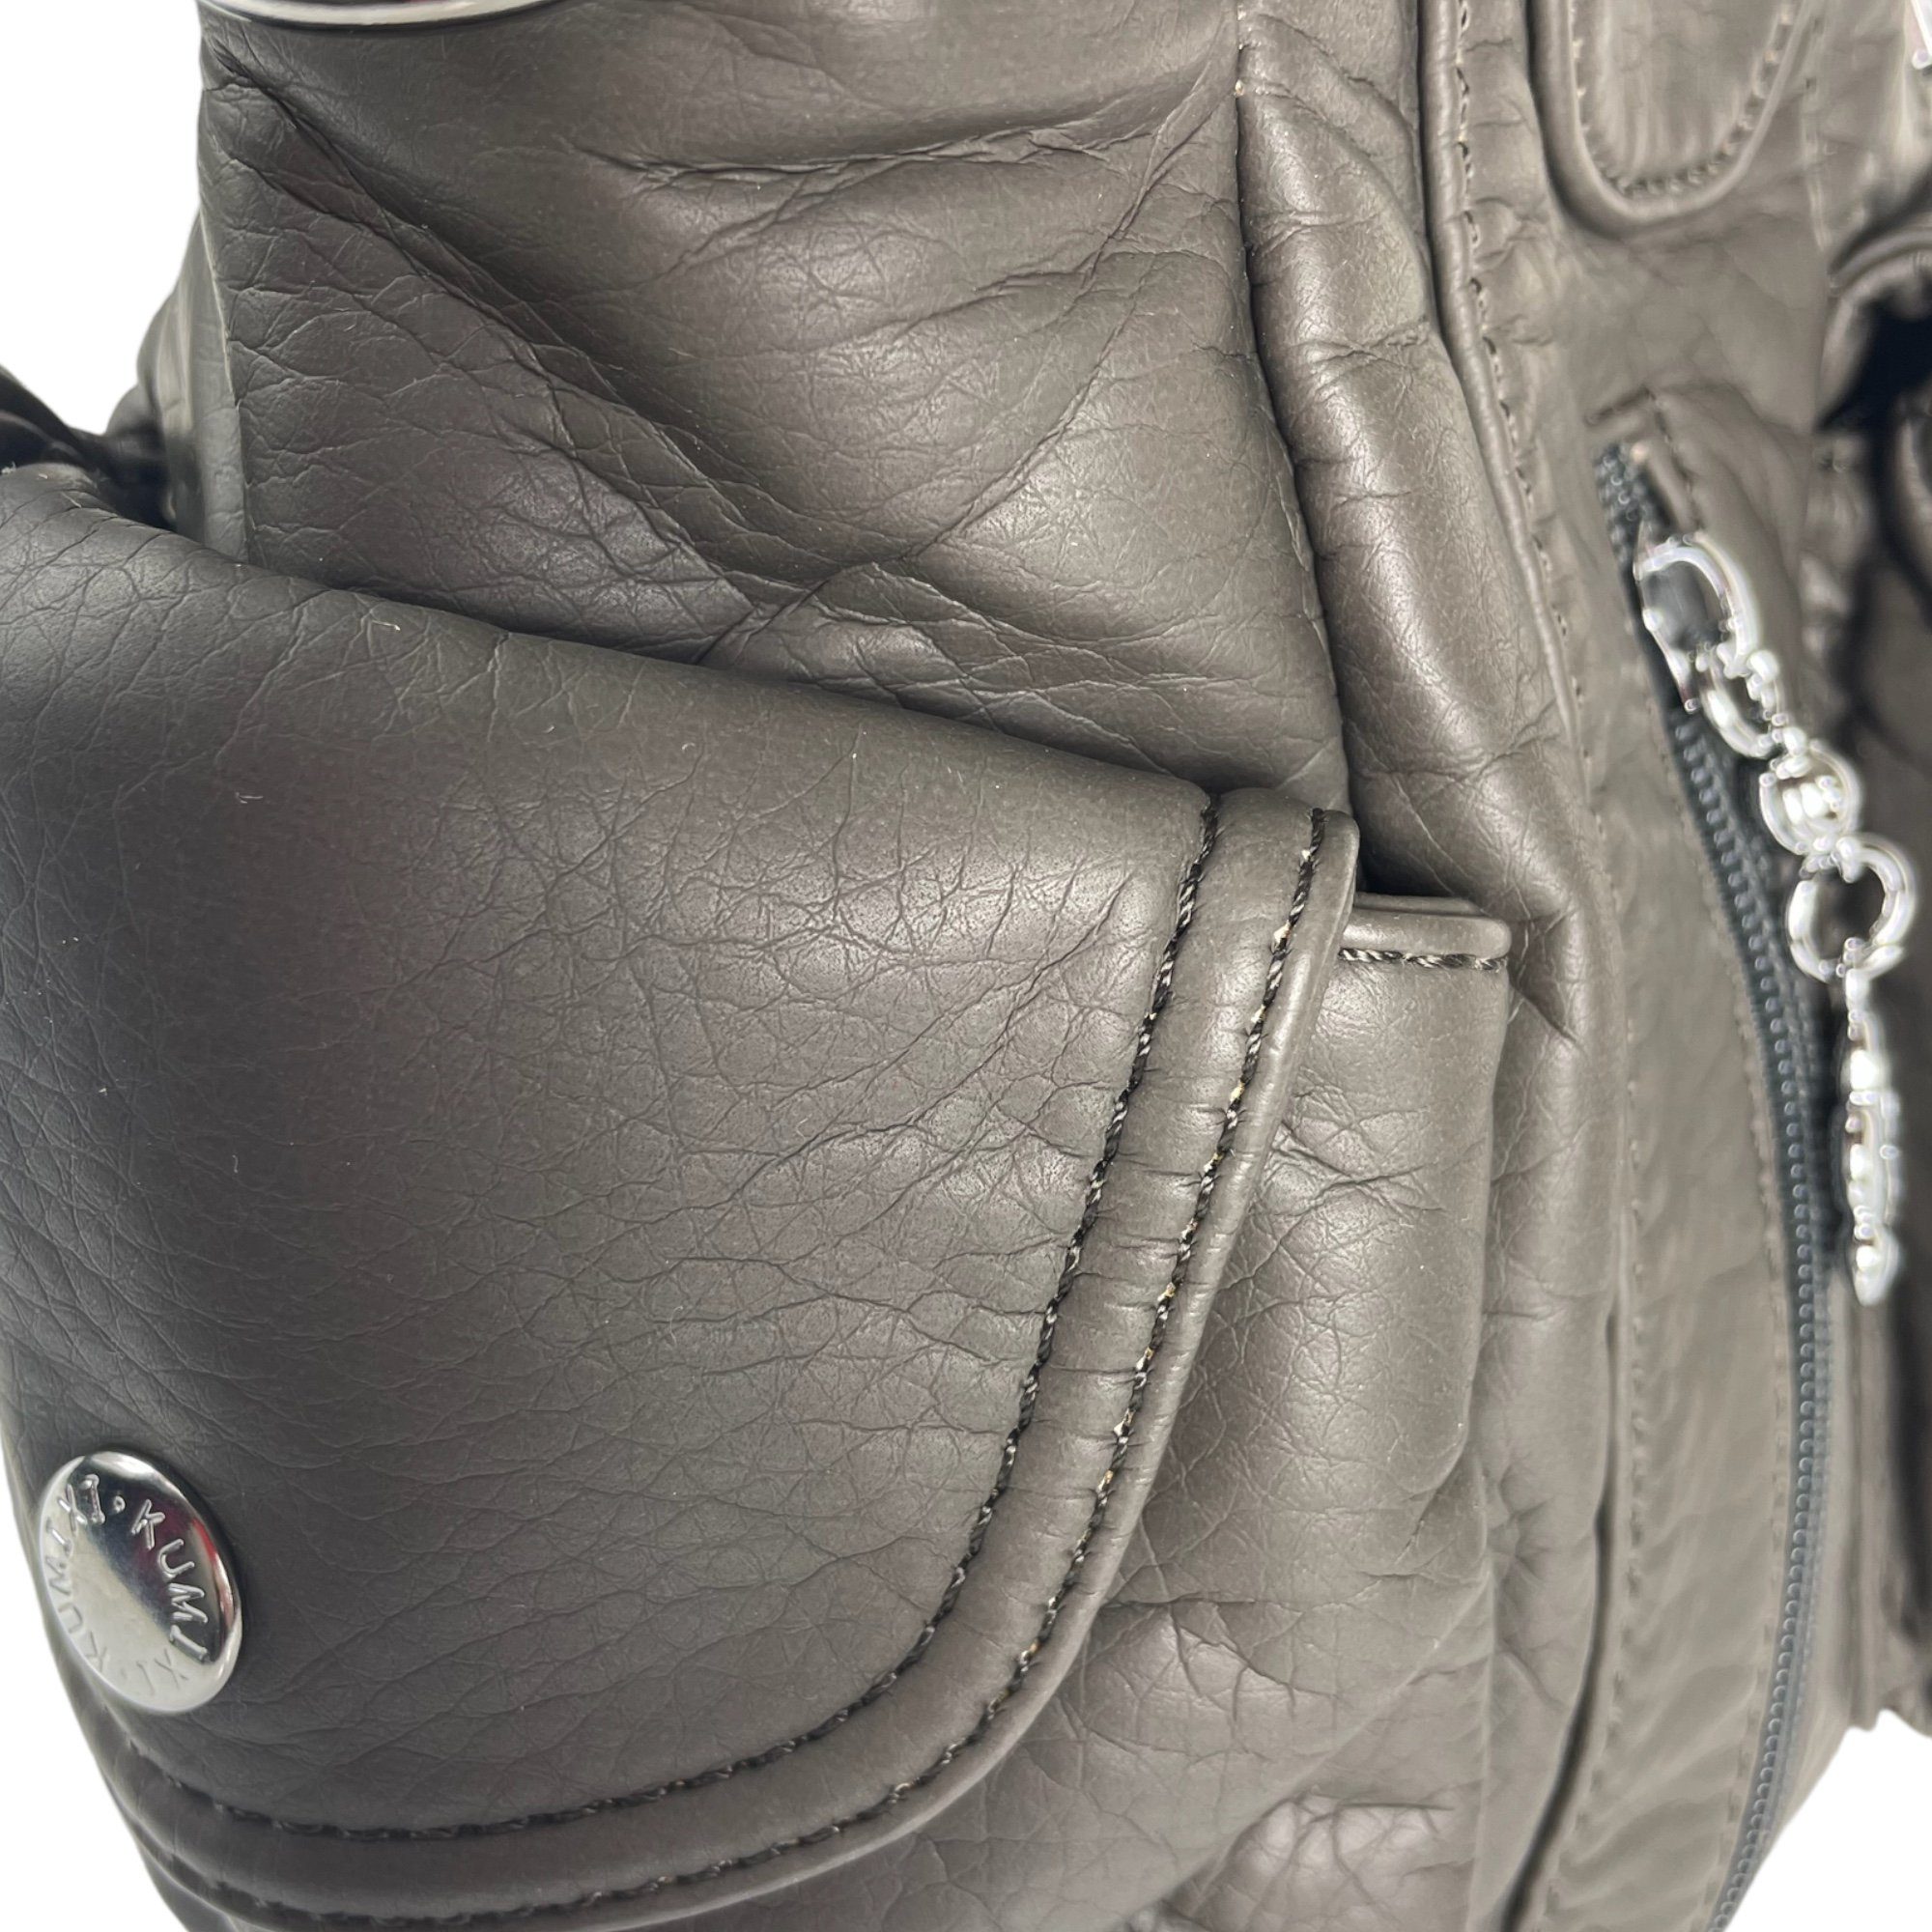 Taschen4life Schultertasche AKW22026, abnehmbarer Damen & Schultertasche anthrazit Schulterriemen, Tragegriffe lange Handtasche